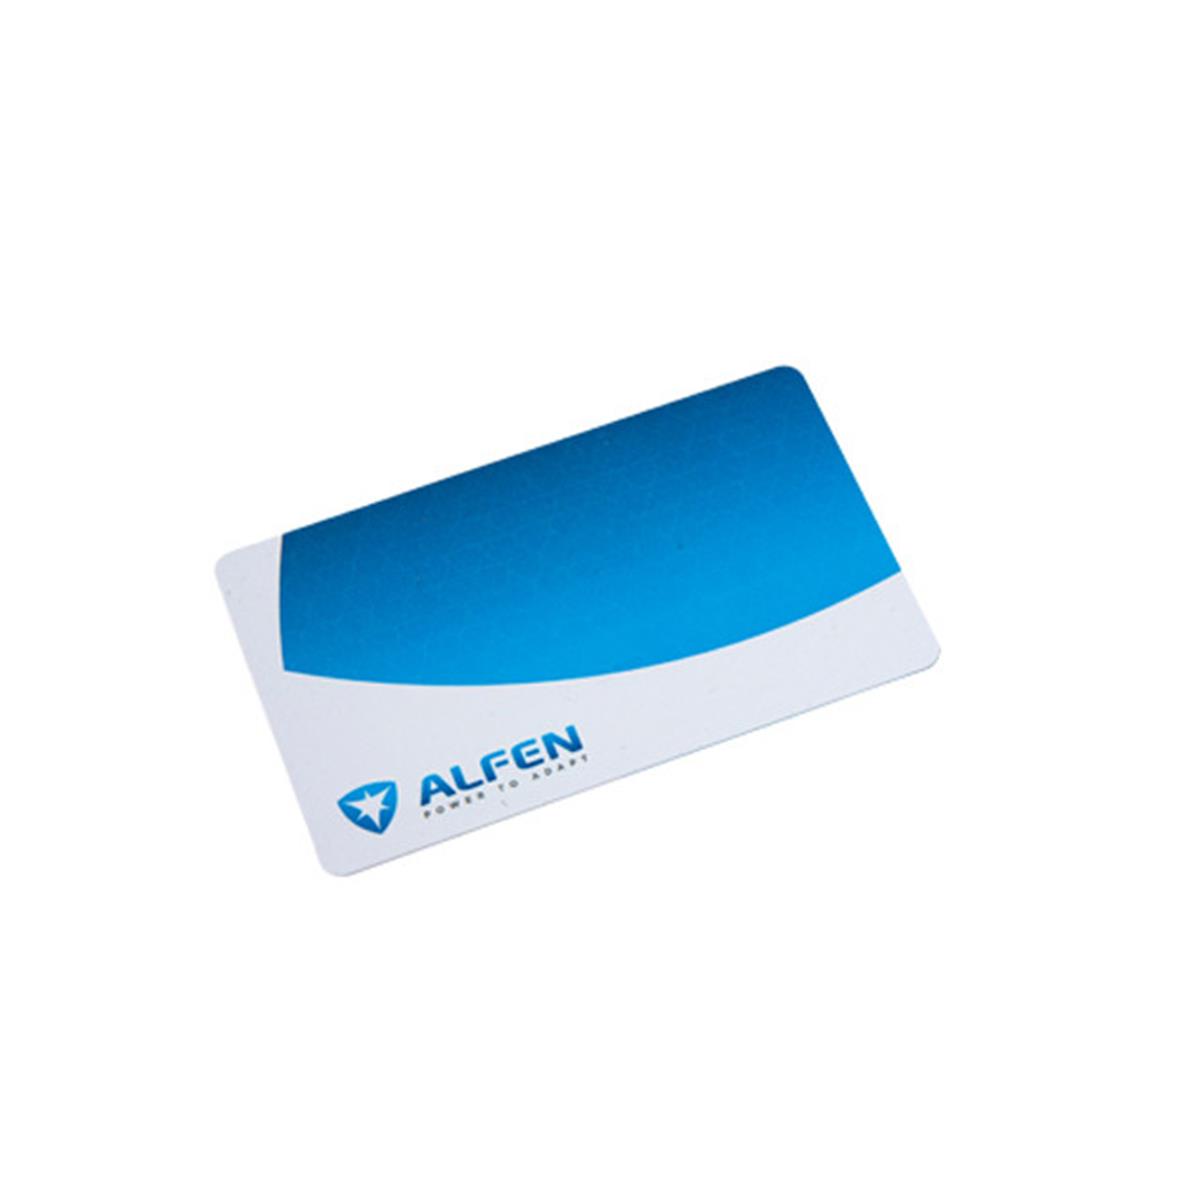 Pass de recharge Alfen (RFID)